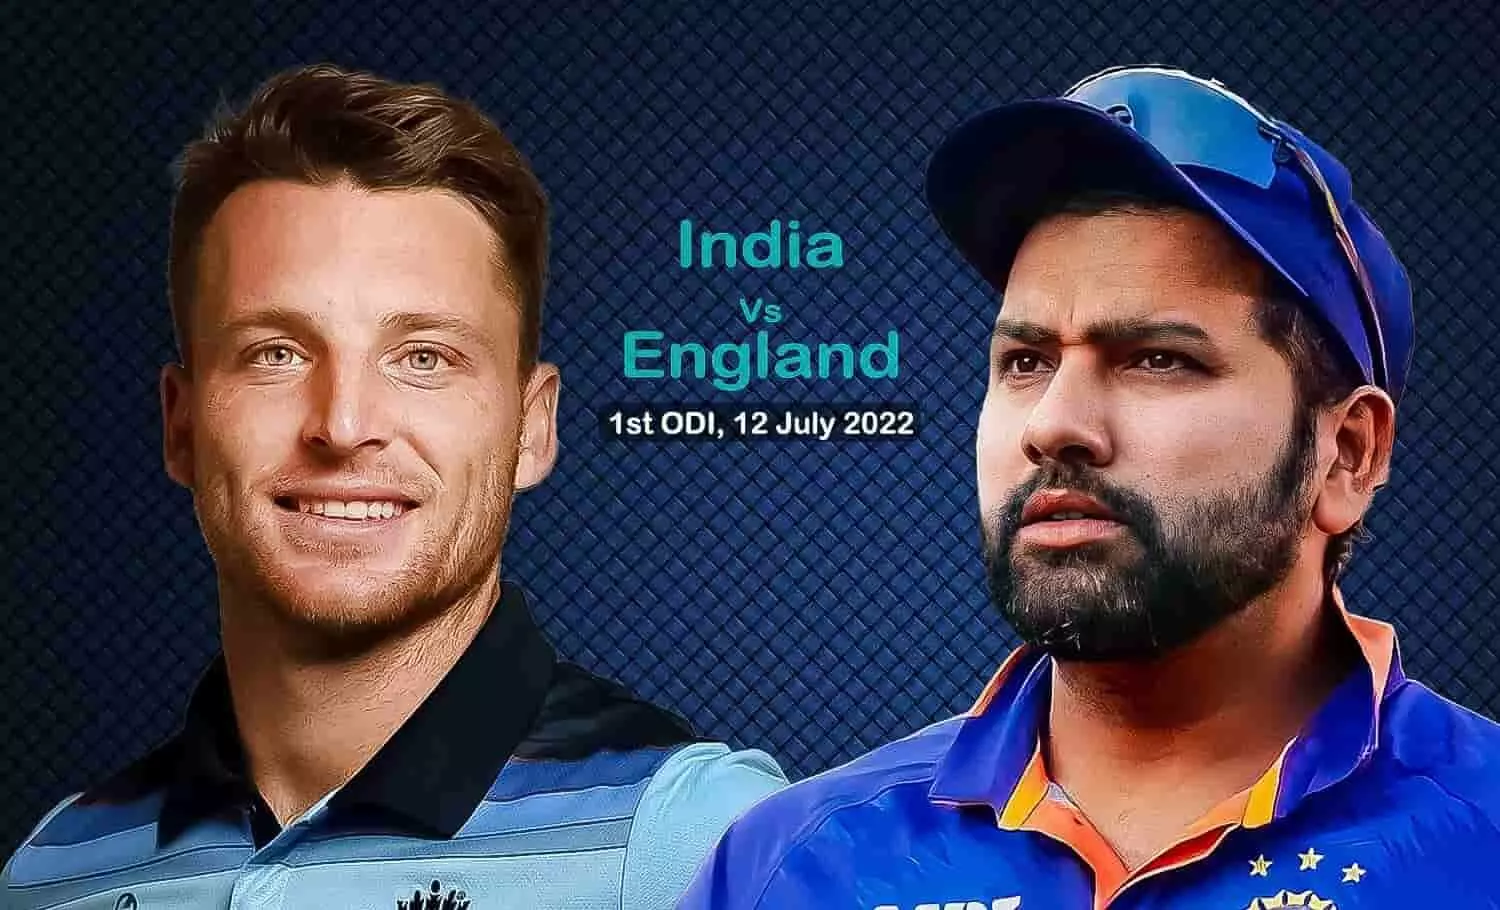 Ind vs Eng 1st ODI Live